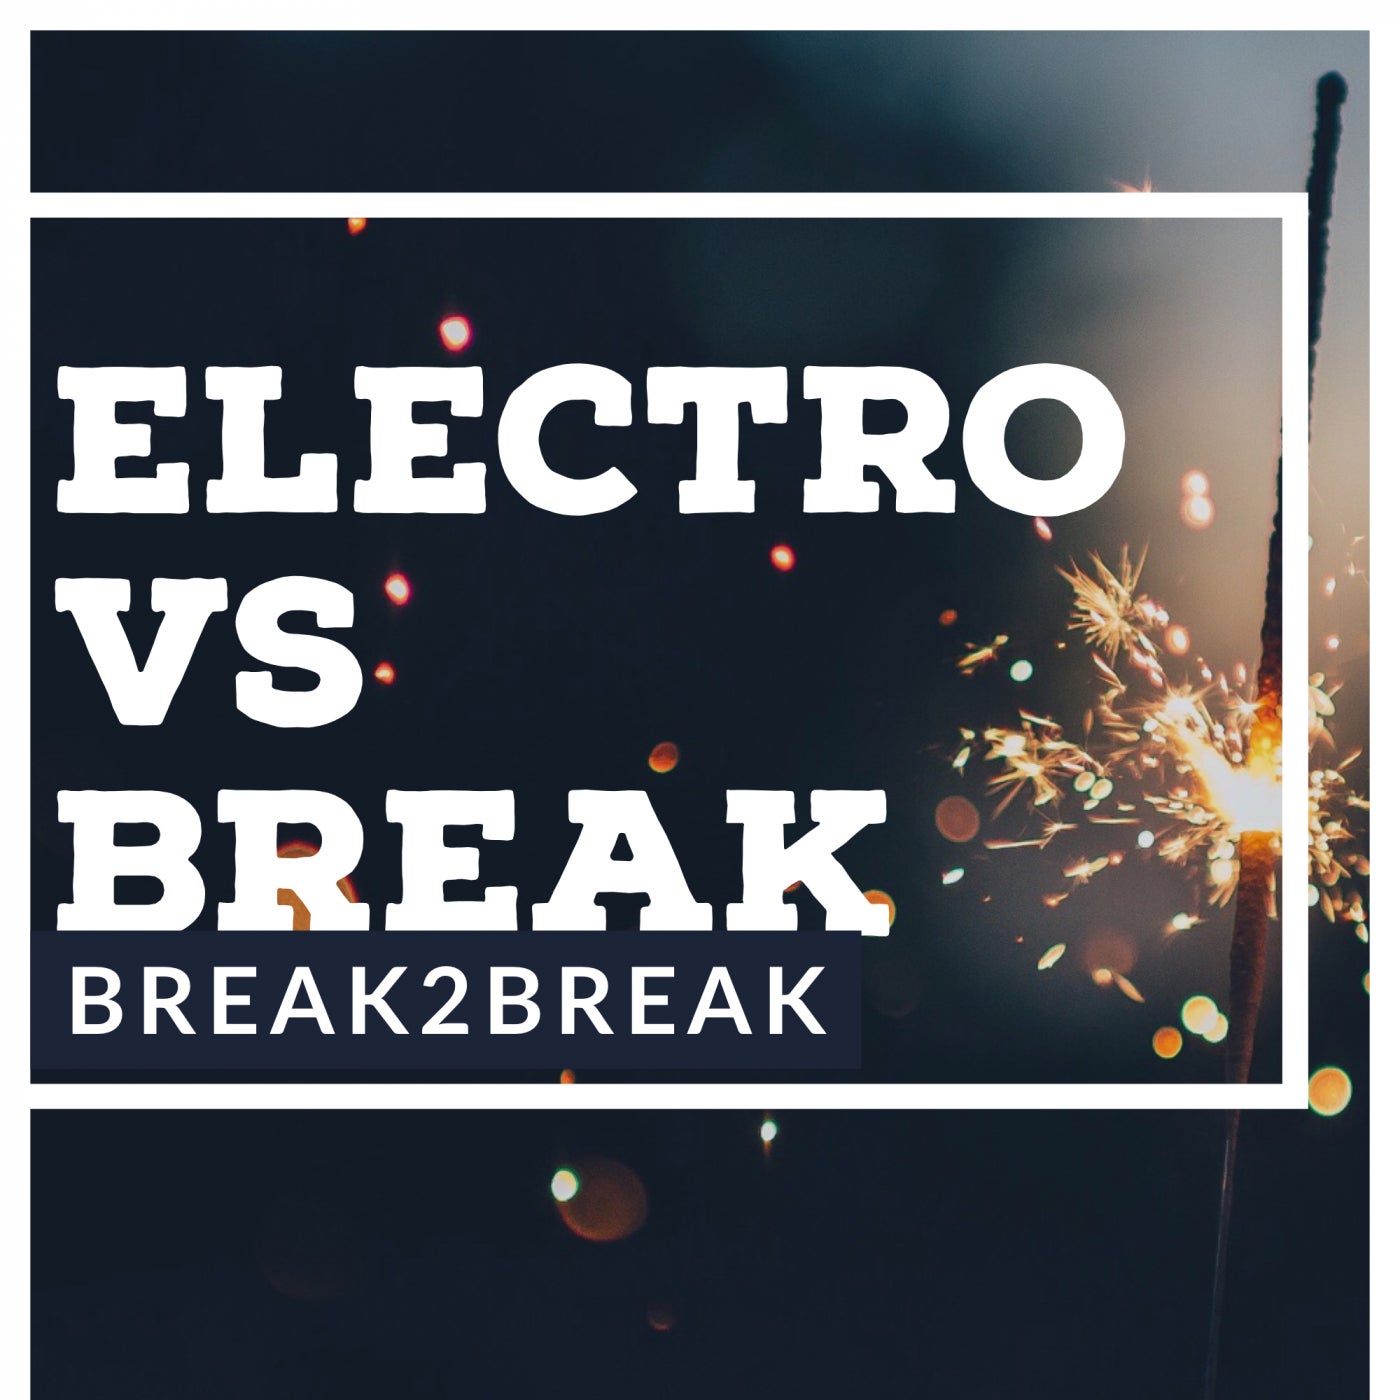 Electro Vs Break